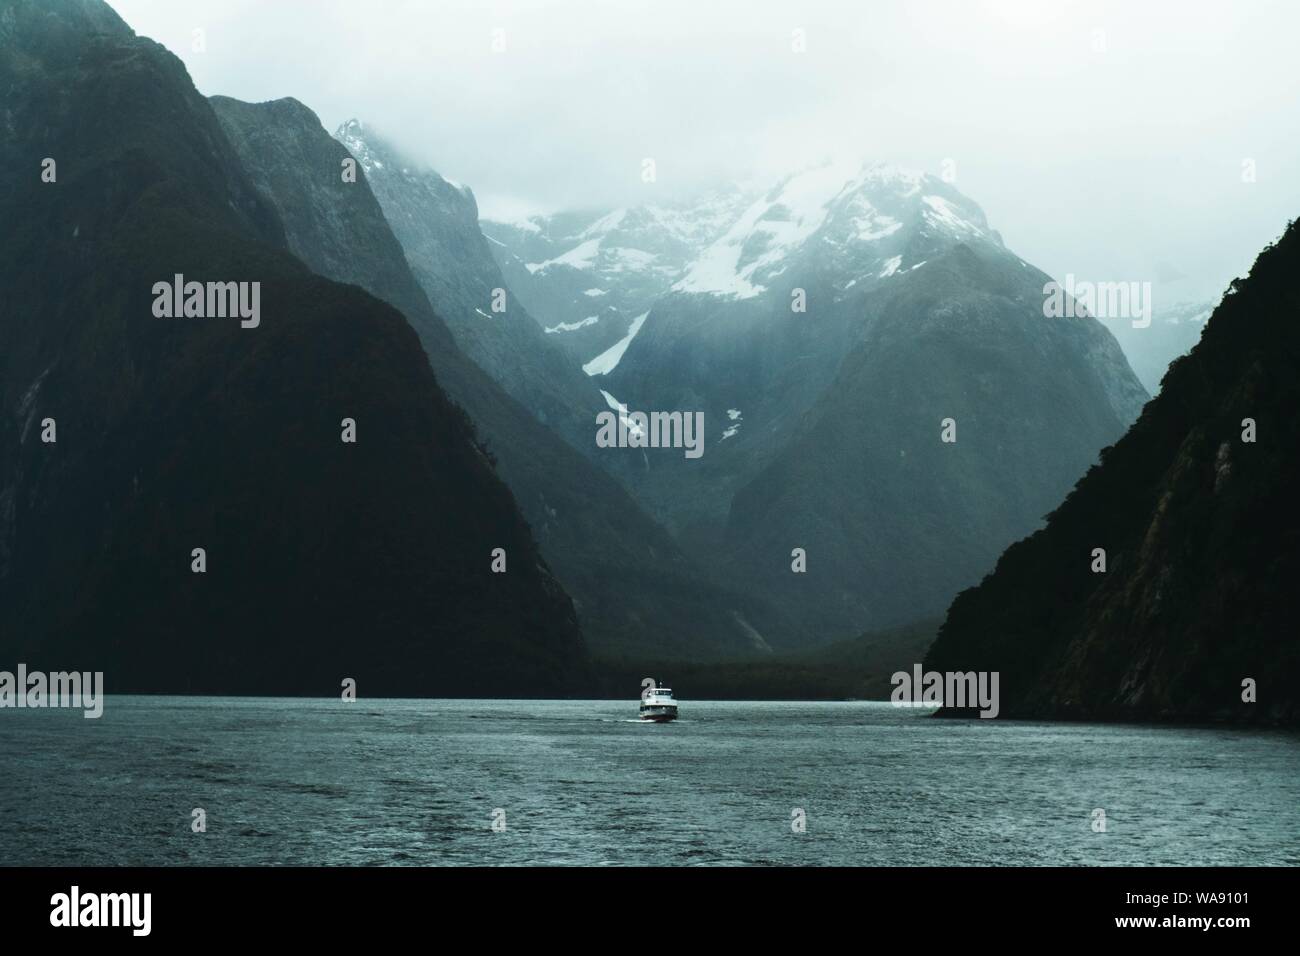 Bellissimo scatto di un lago con una barca a vela cuddy in mezzo e montagne rocciose su entrambi i lati Foto Stock